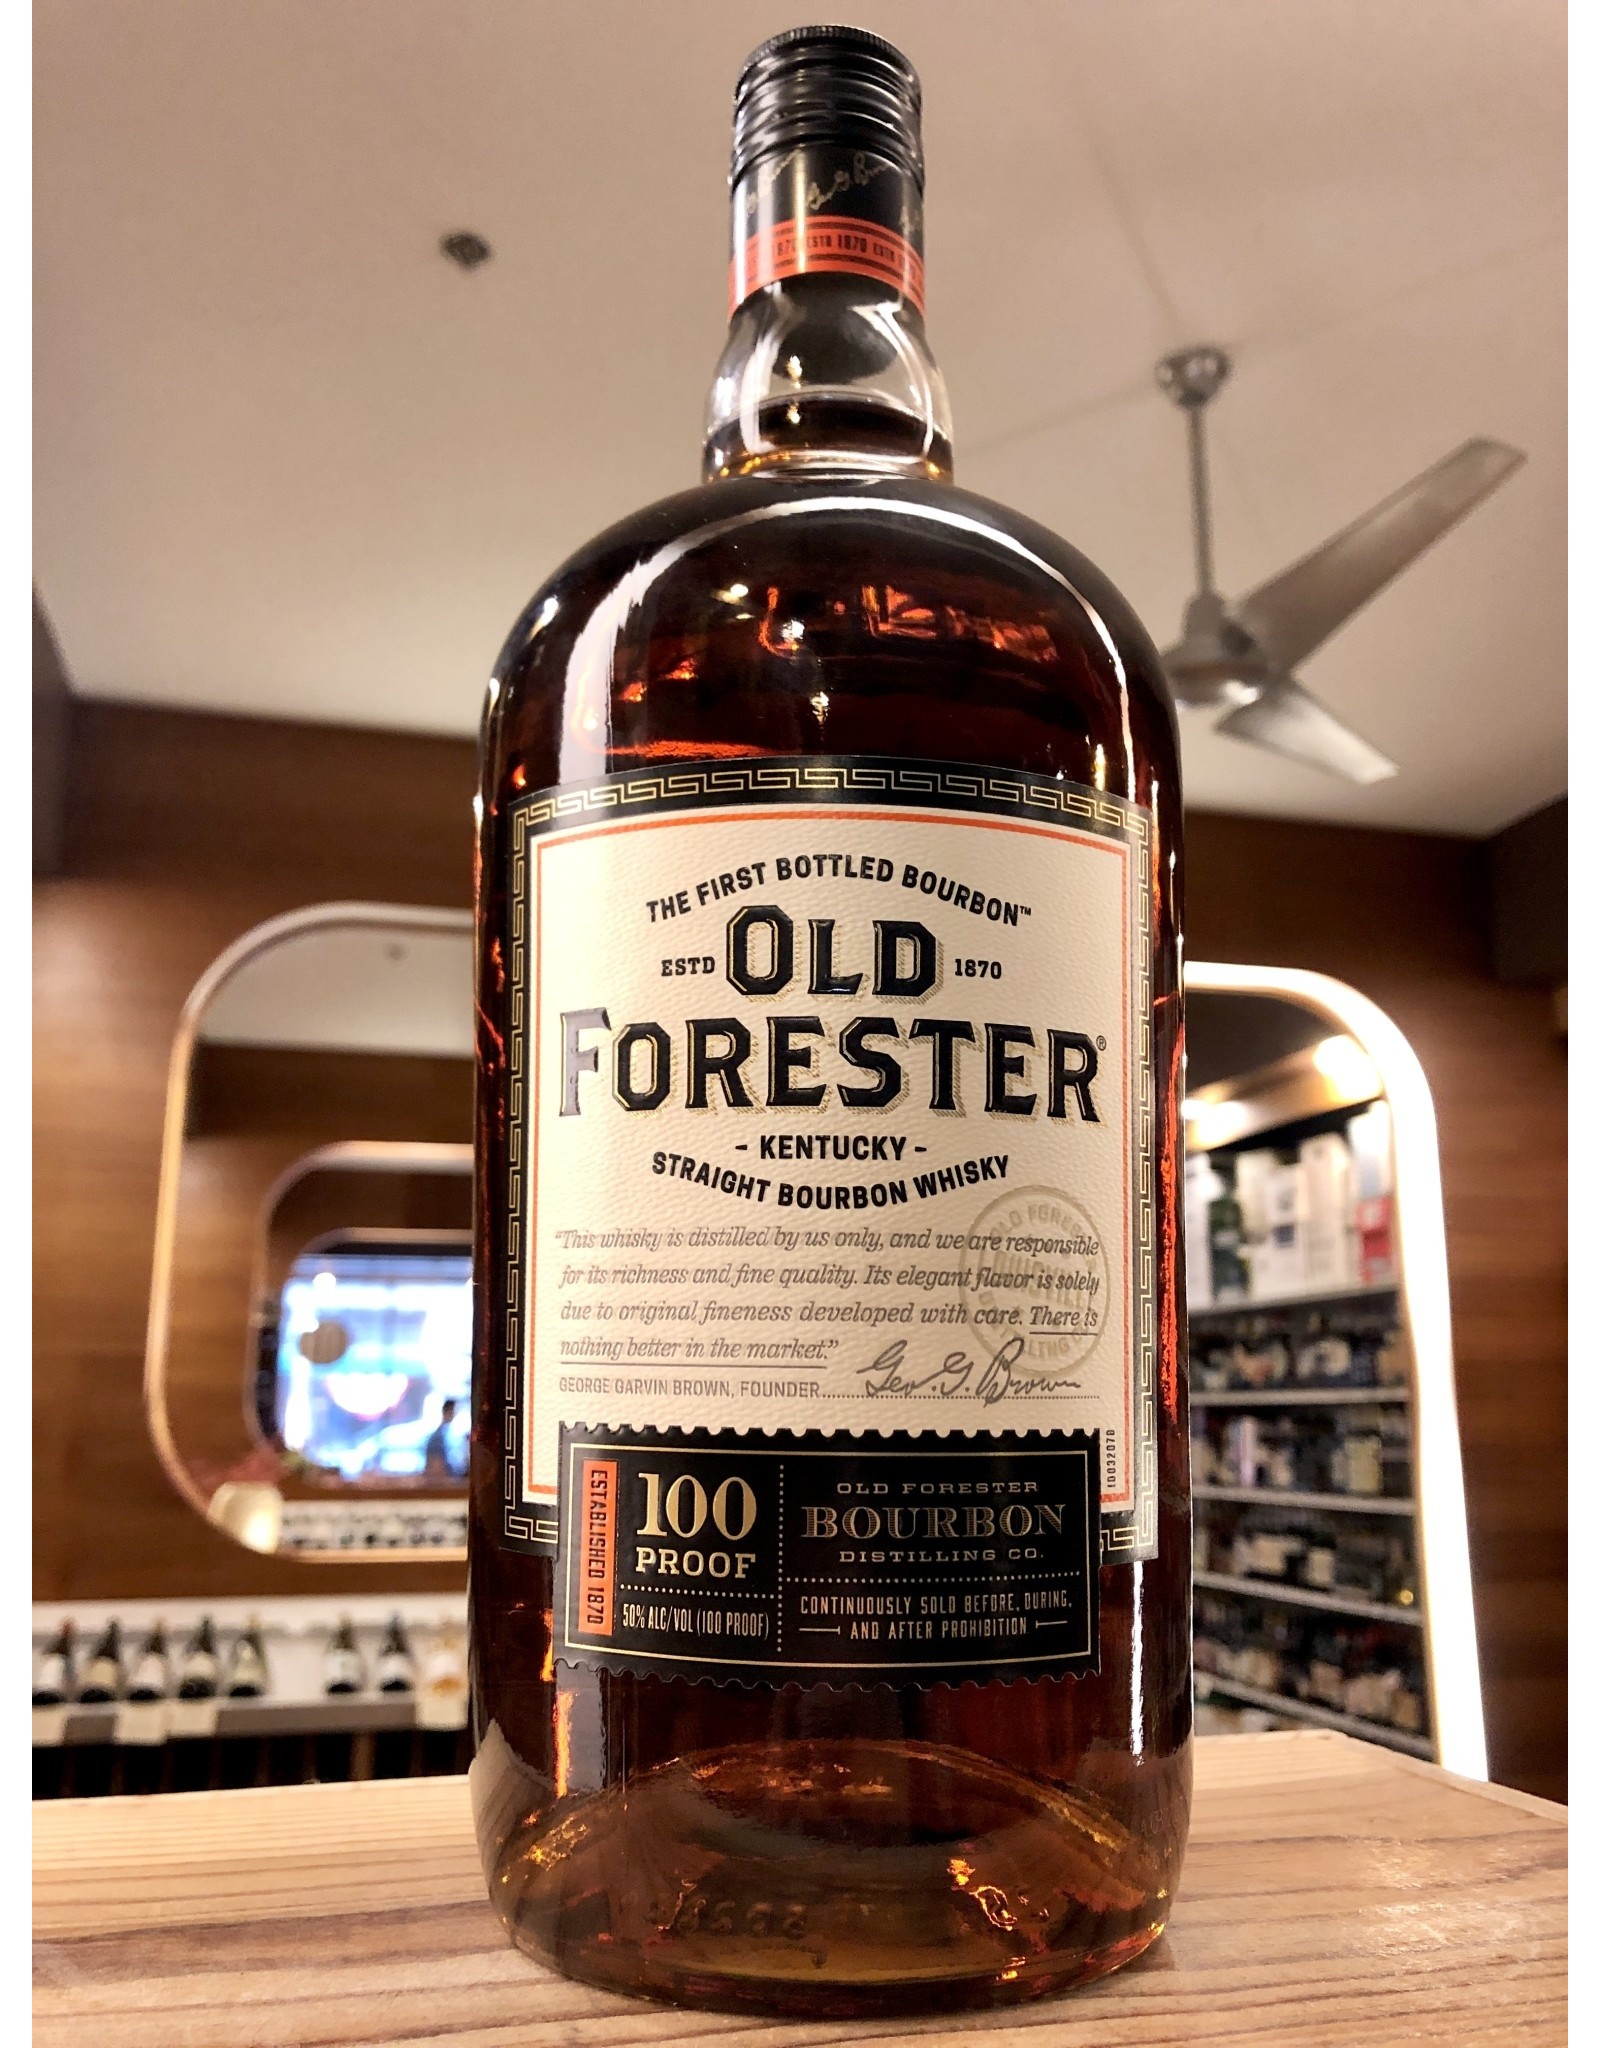 Old Forester 100 Proof Bourbon - 1.75 Liter